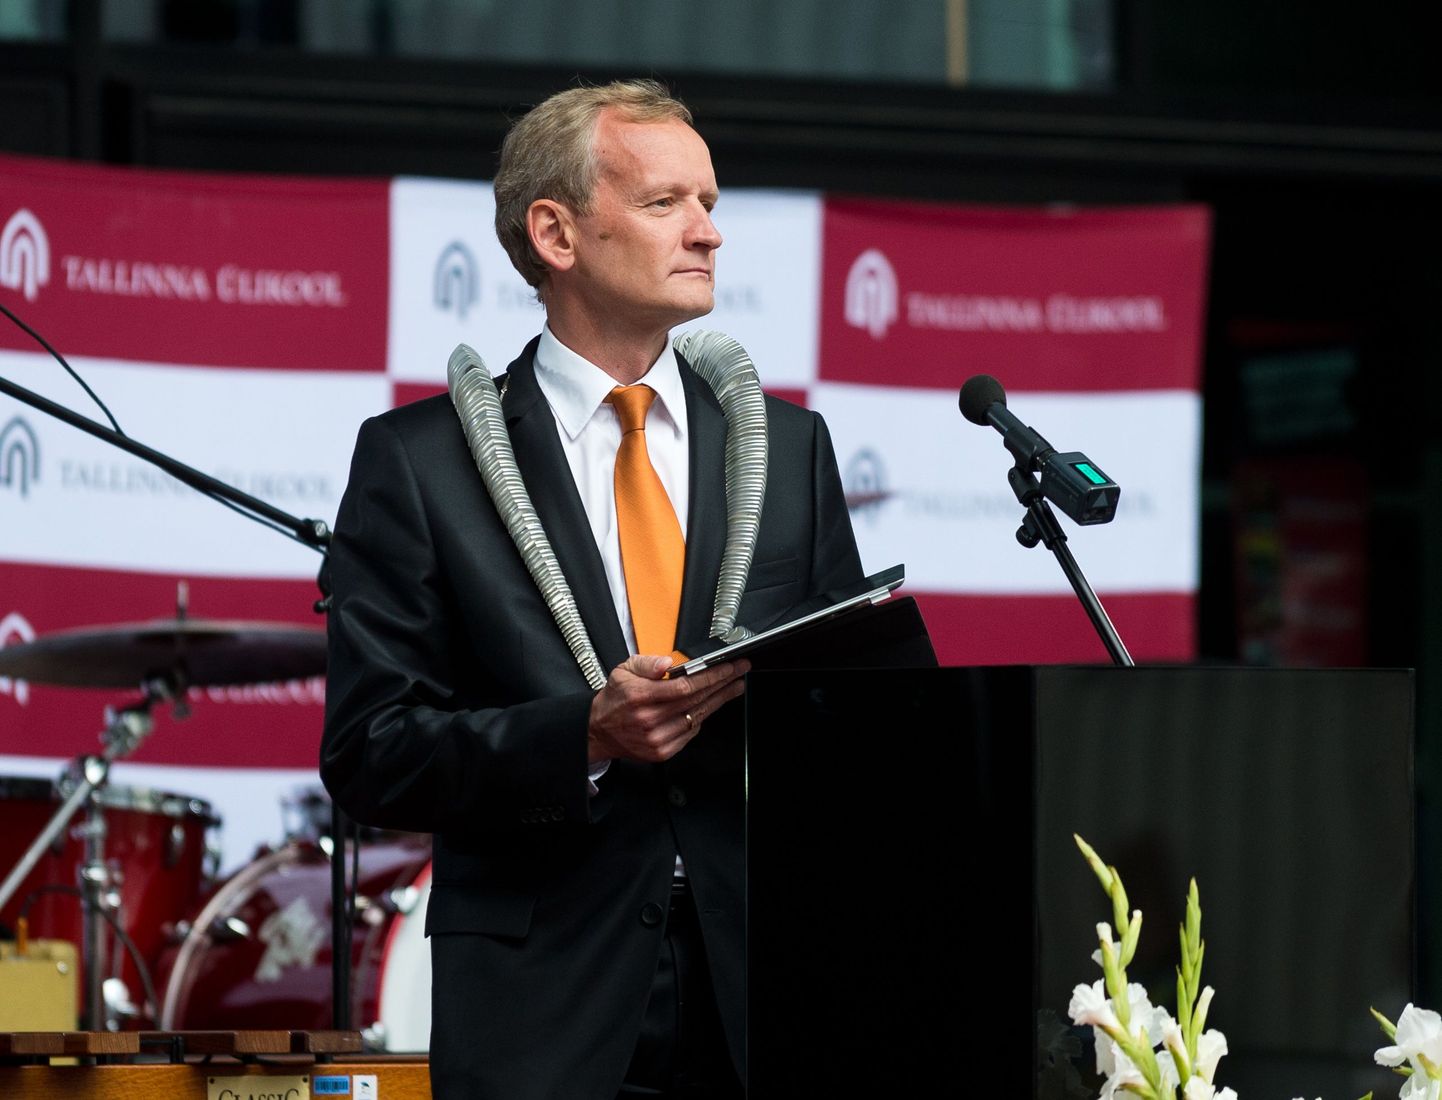 Tallinna Ülikooli senine rektor Tiit Land on varem öelnud, et näeks end heameelega rektorina ka järgmised viis aastat.